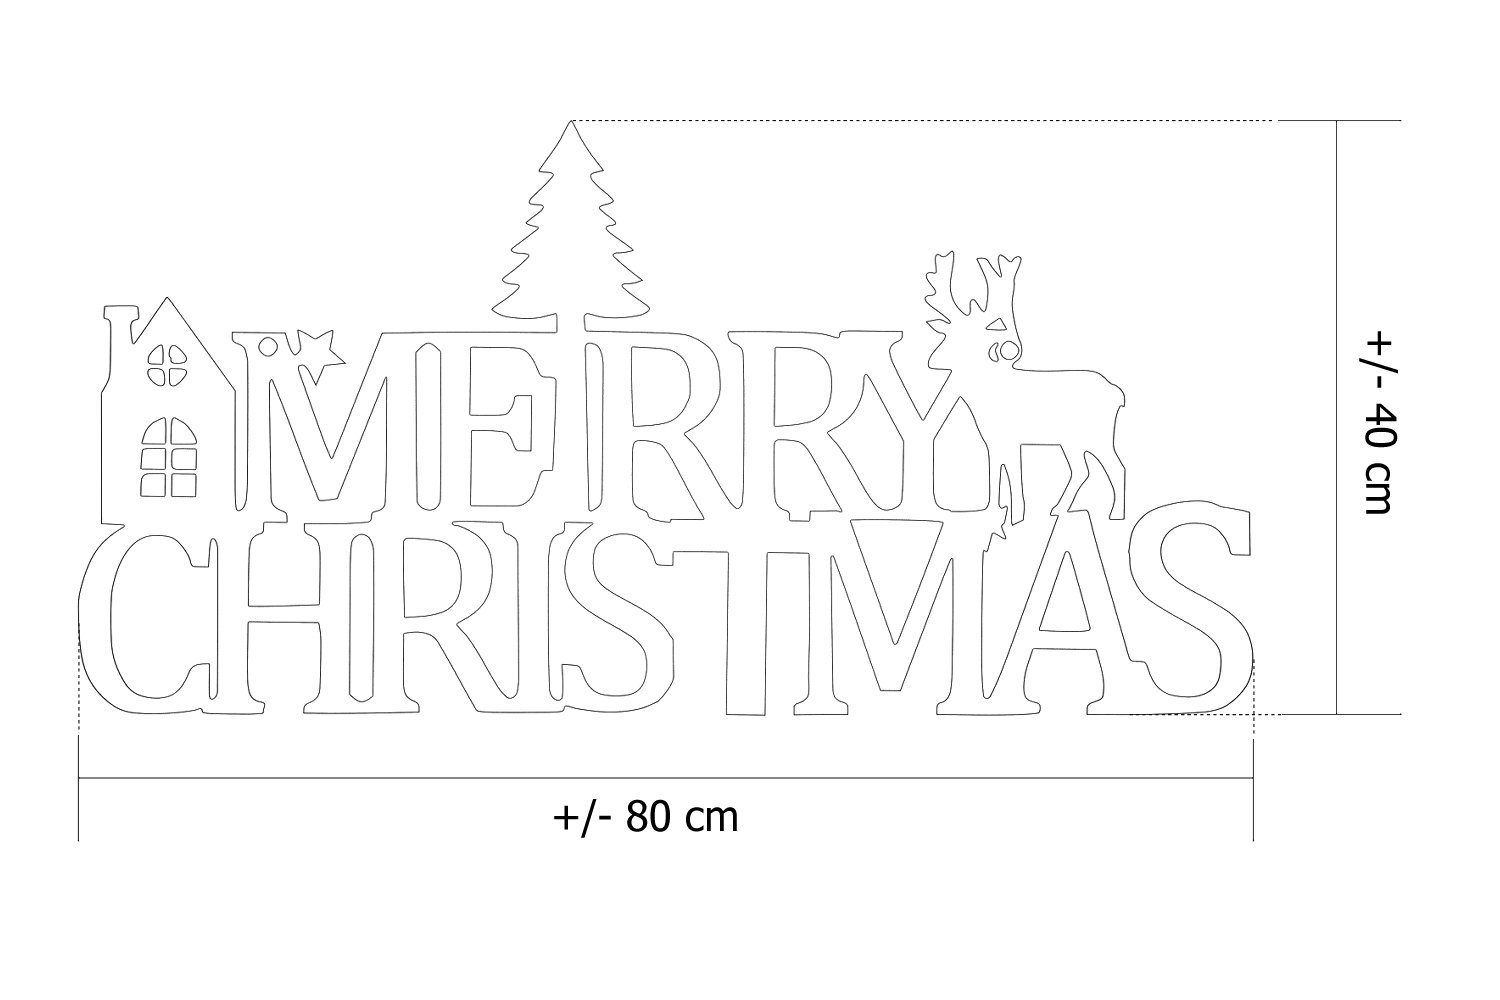 tuning-art Weihnachtsfigur WD02-E Weihnachtsdeko Weihnachtliches X-Mas Edelrost Stahl Merry Metallschild Edelrost